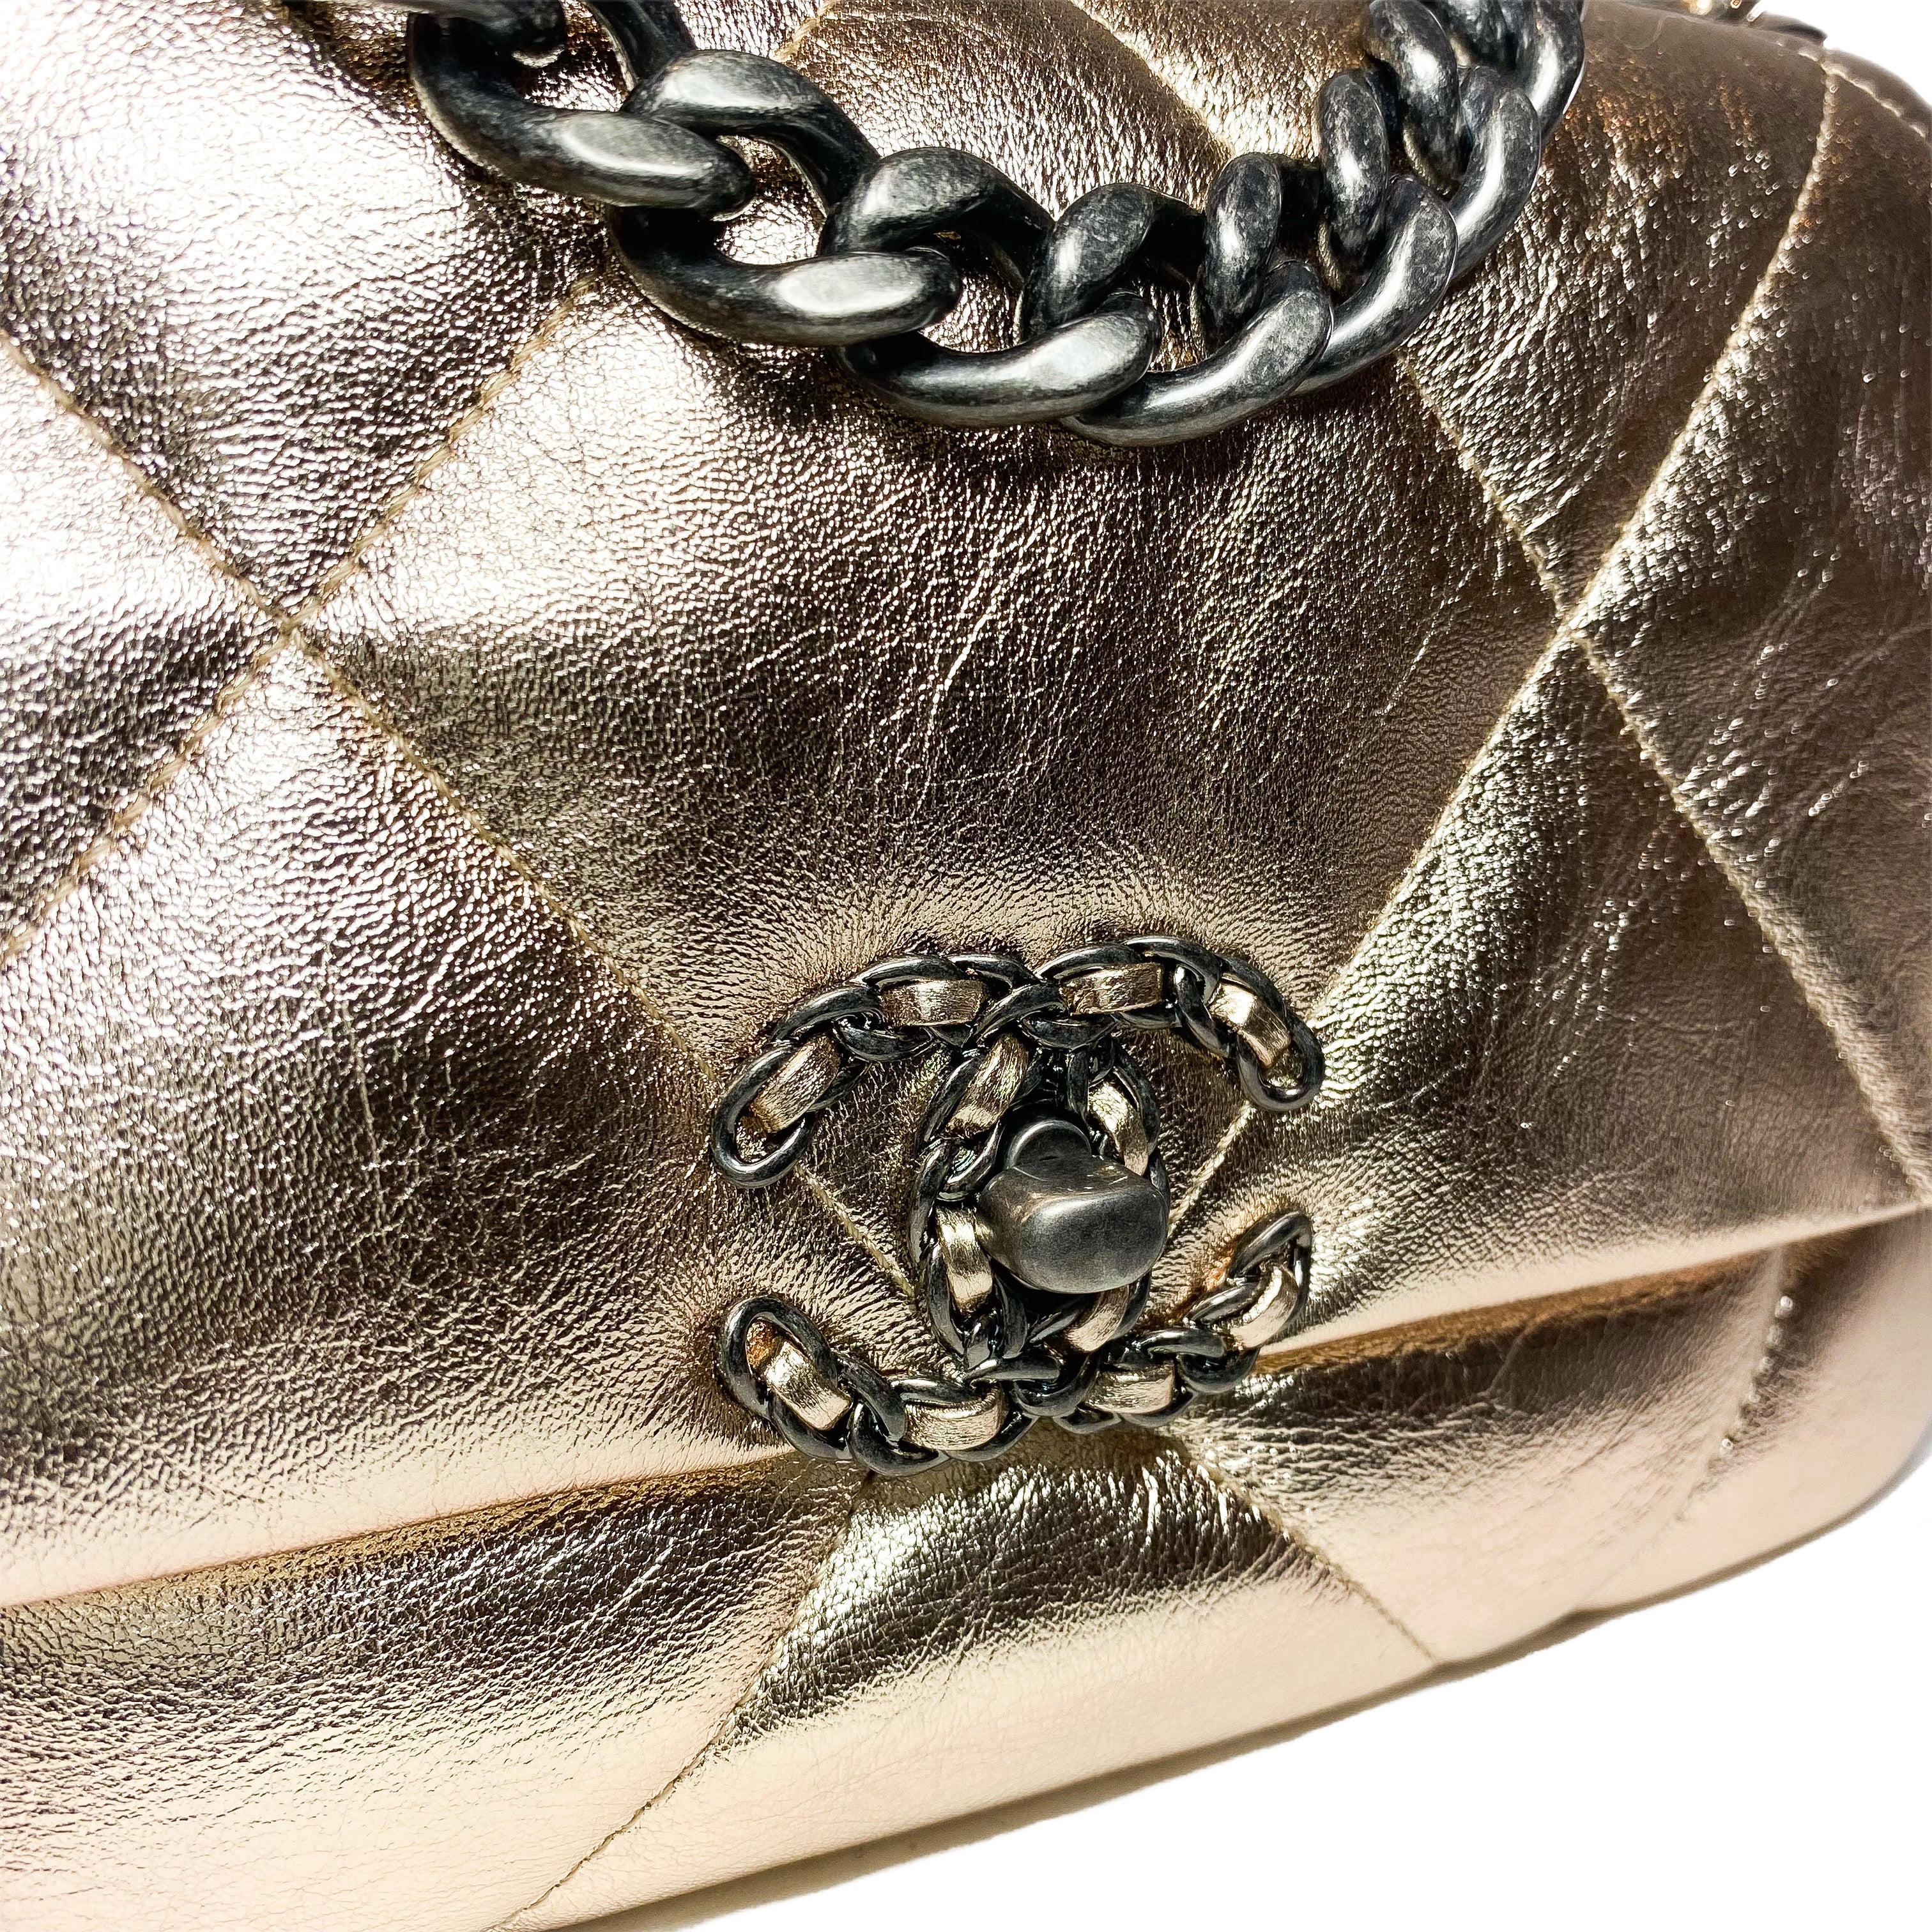 Chanel 19 Medium Metallic Rose Gold Flap Bag